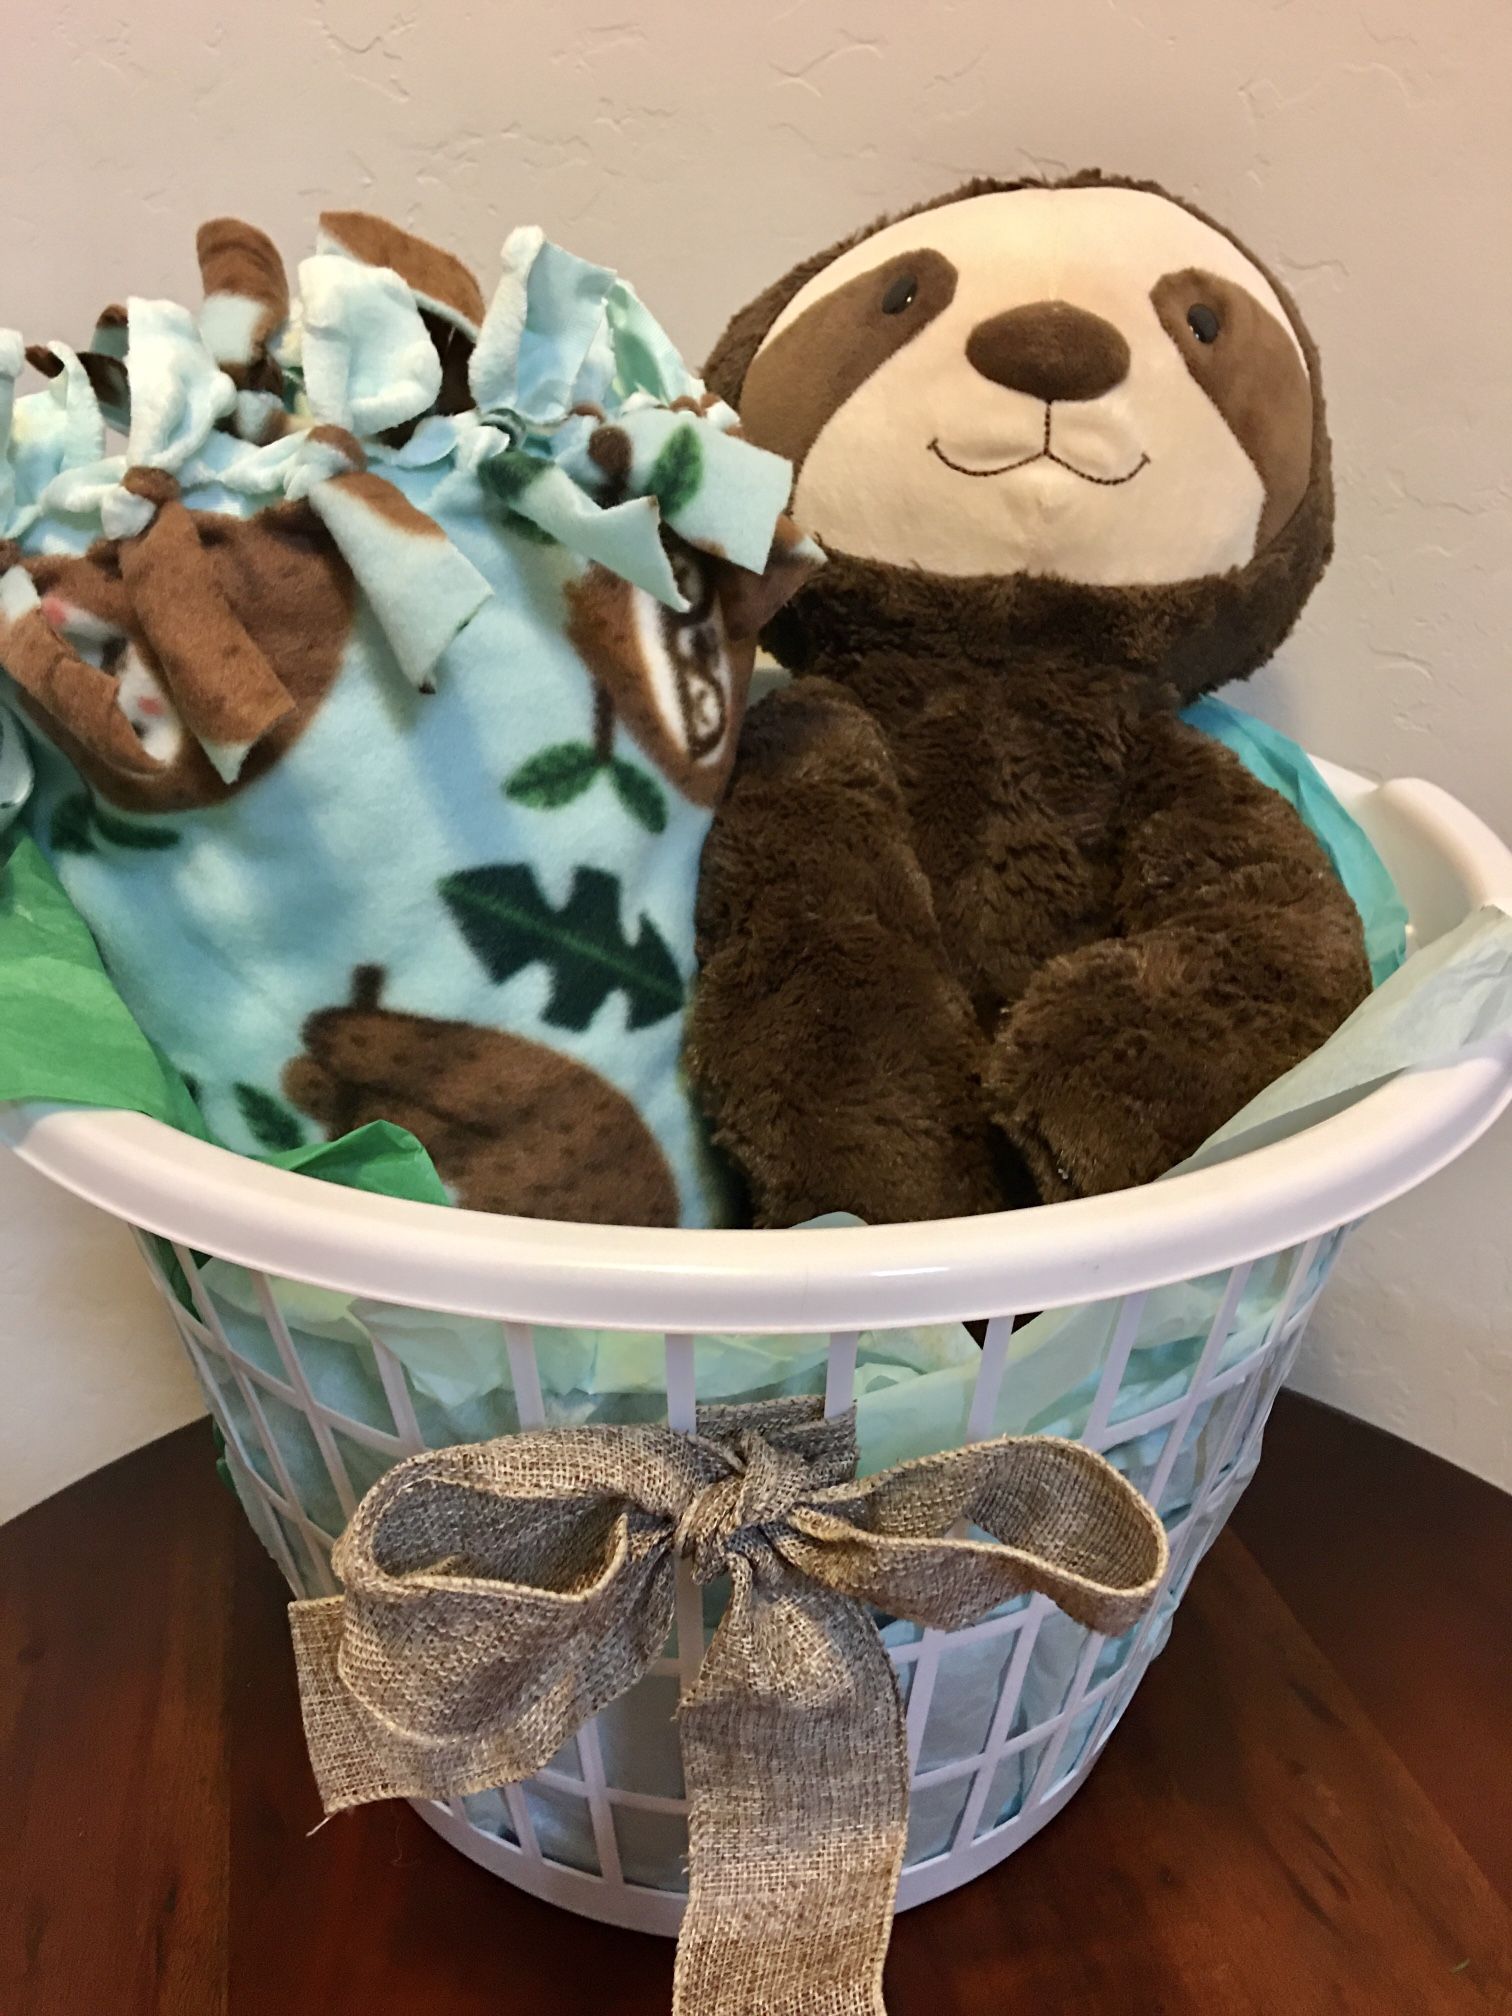 Adorable Sloth Tie Blanket And Plush Gift Basket  Stuffed Animal New Throw Christmas Baby